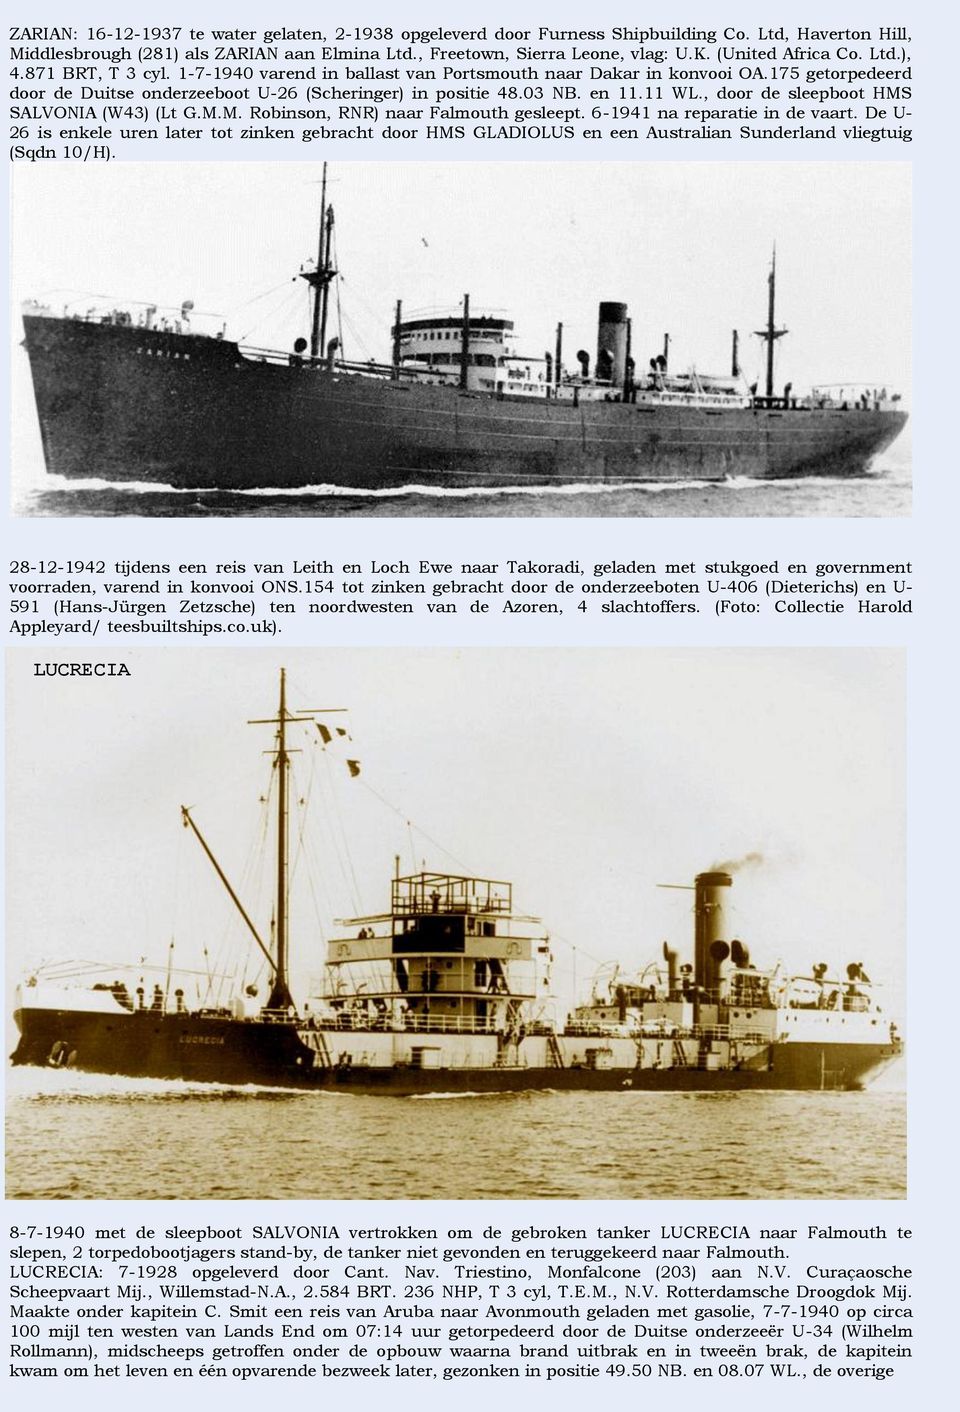 en 11.11 WL., door de sleepboot HMS SALVONIA (W43) (Lt G.M.M. Robinson, RNR) naar Falmouth gesleept. 6-1941 na reparatie in de vaart.